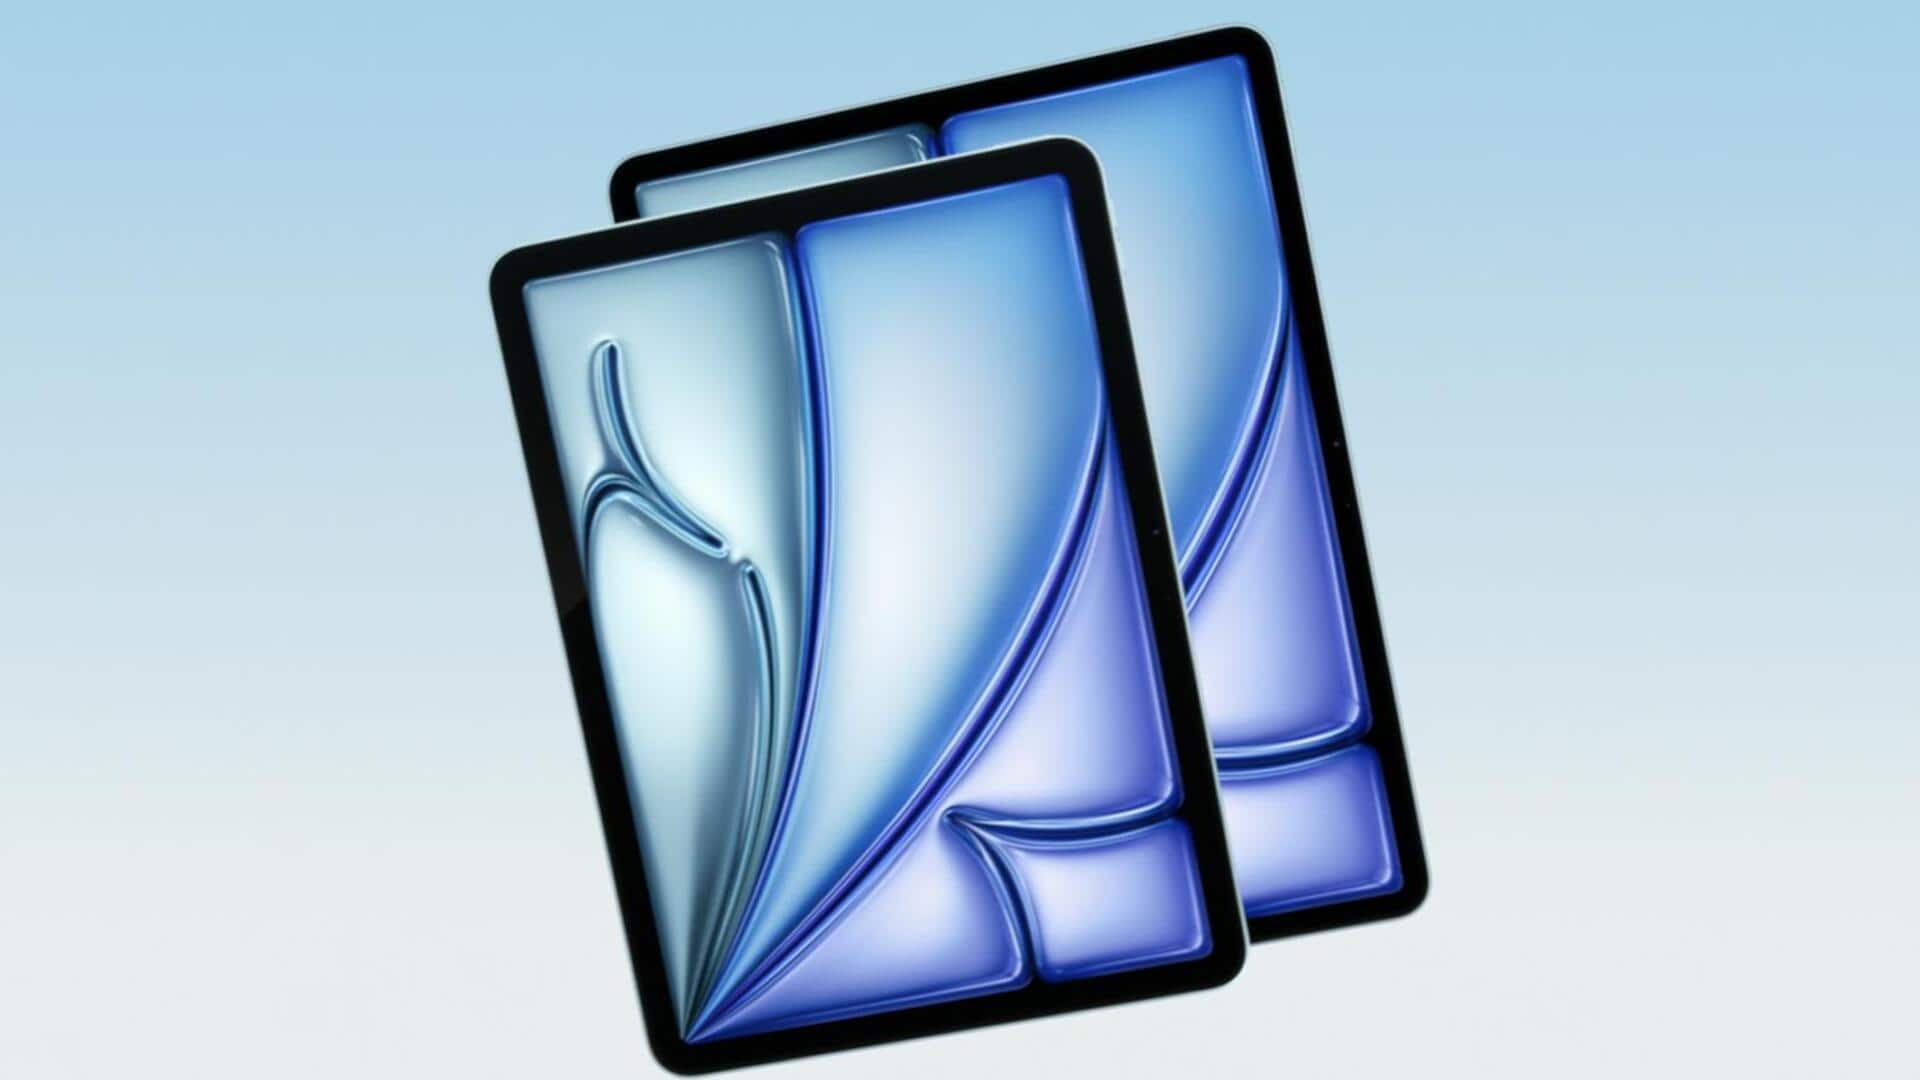 ऐपल ने लॉन्च किया M2 चिपसेट के साथ आईपैड एयर, जानें कीमत और सभी फीचर्स 